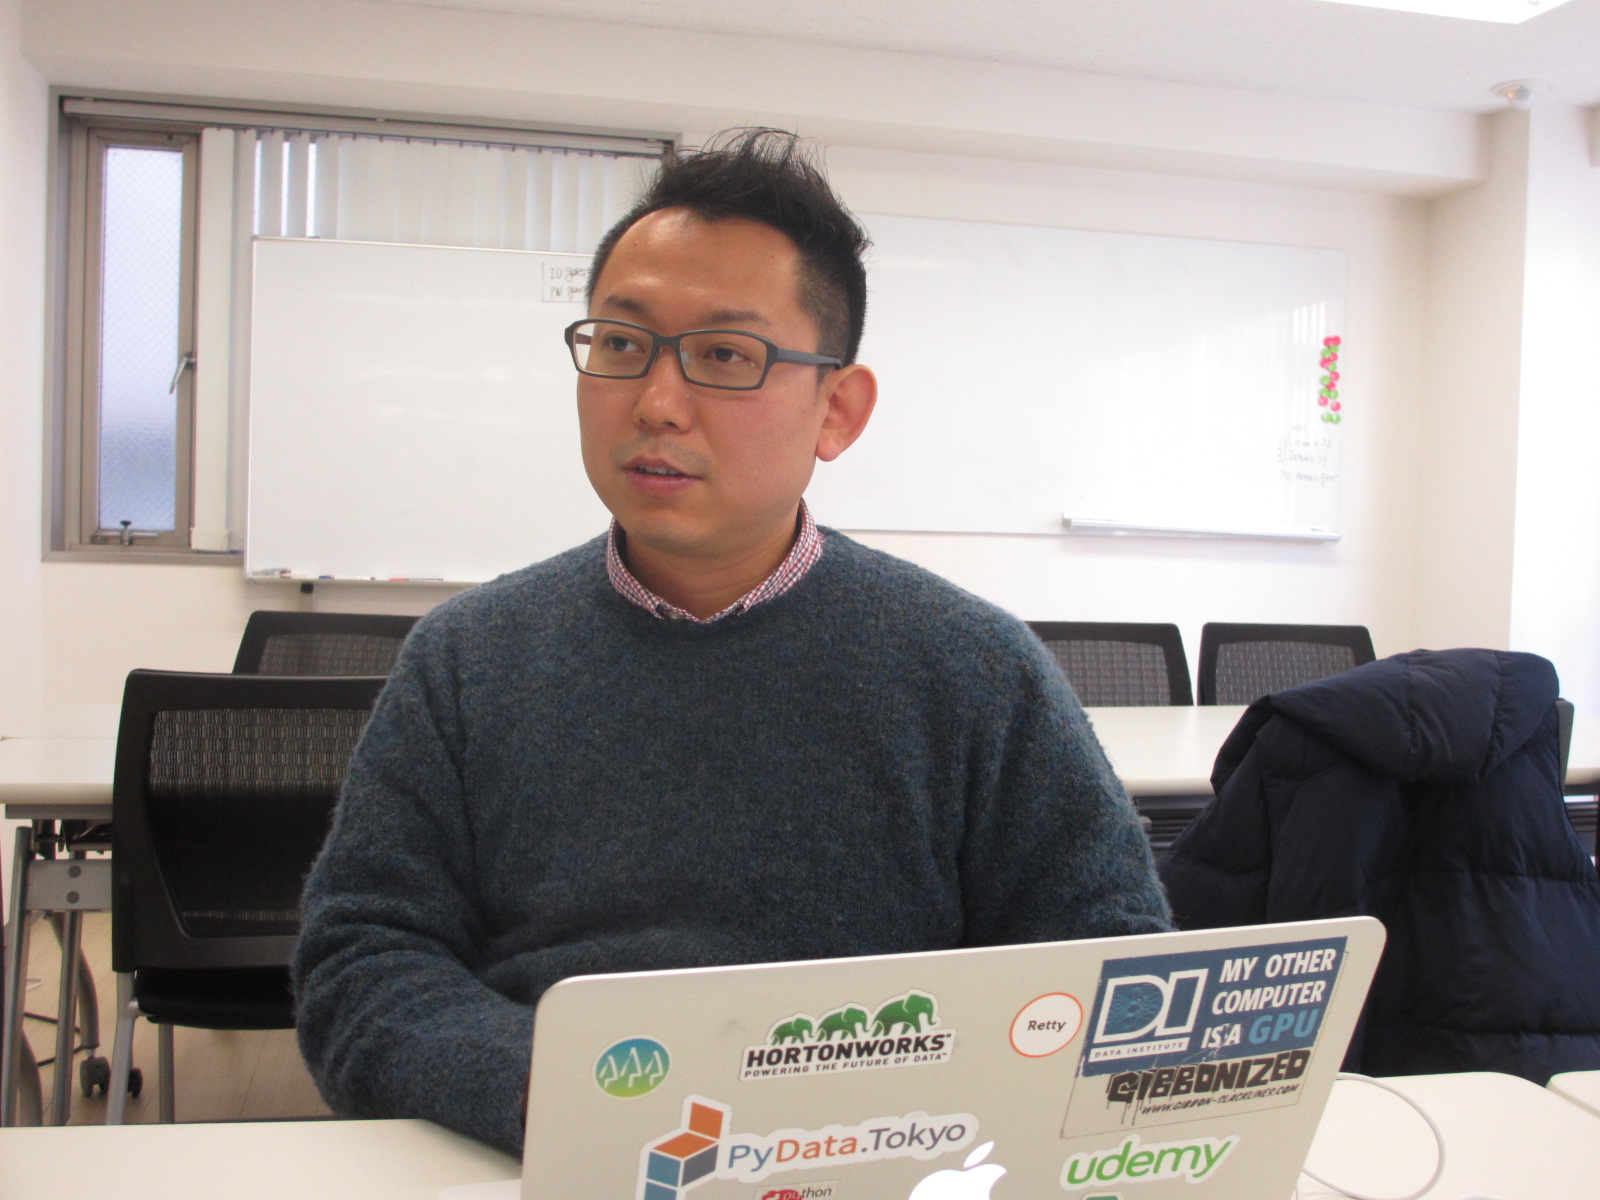 「ビッグデータの広まりがデータサイエンティストを作った」と語る、堅田洋資氏